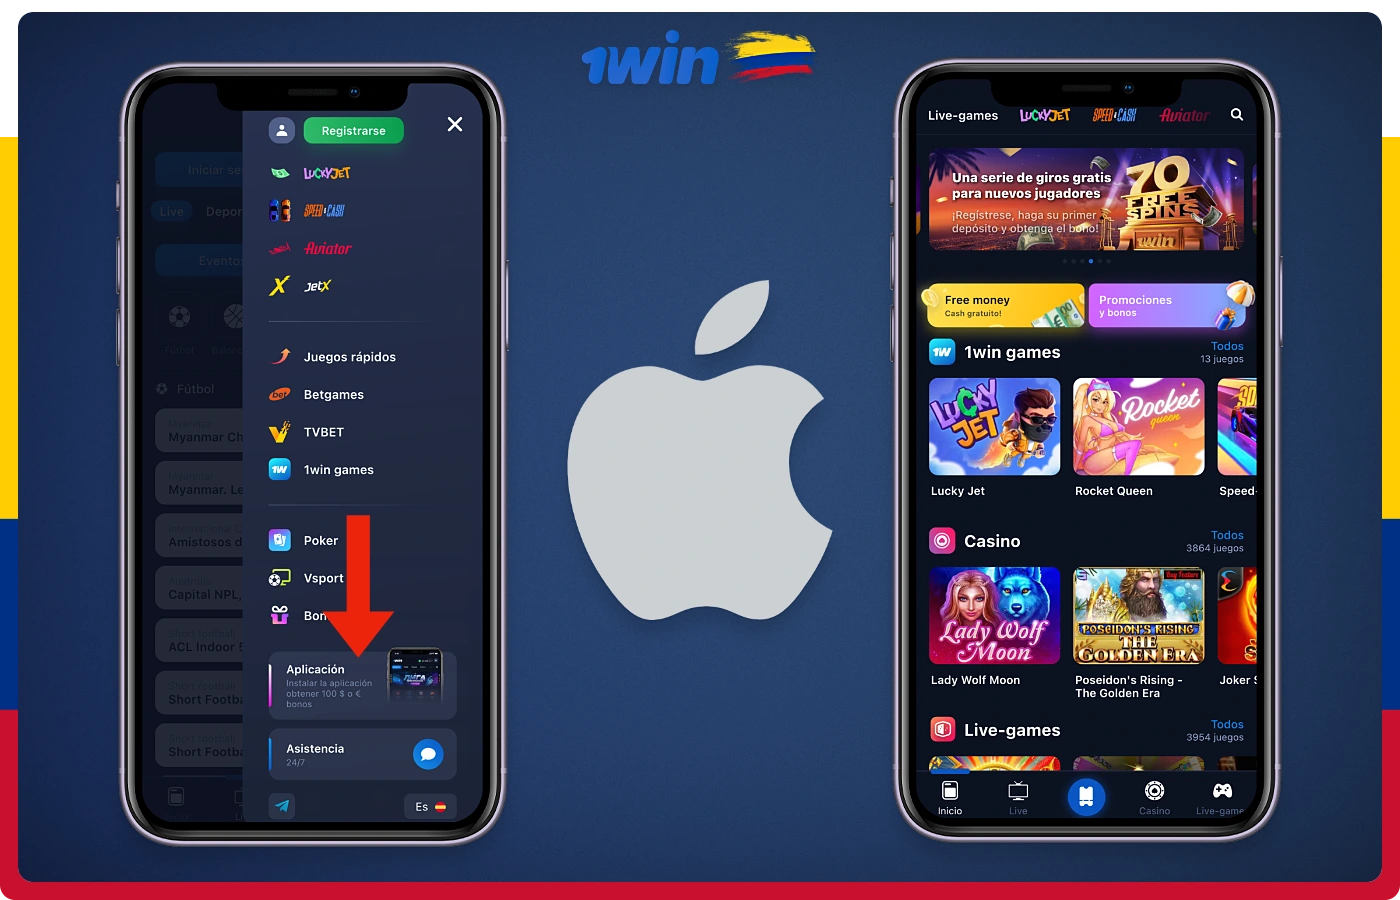 La app de 1win para iPhone y iPad puede ser descargada e instalada por los usuarios colombianos desde la página oficial de la plataforma